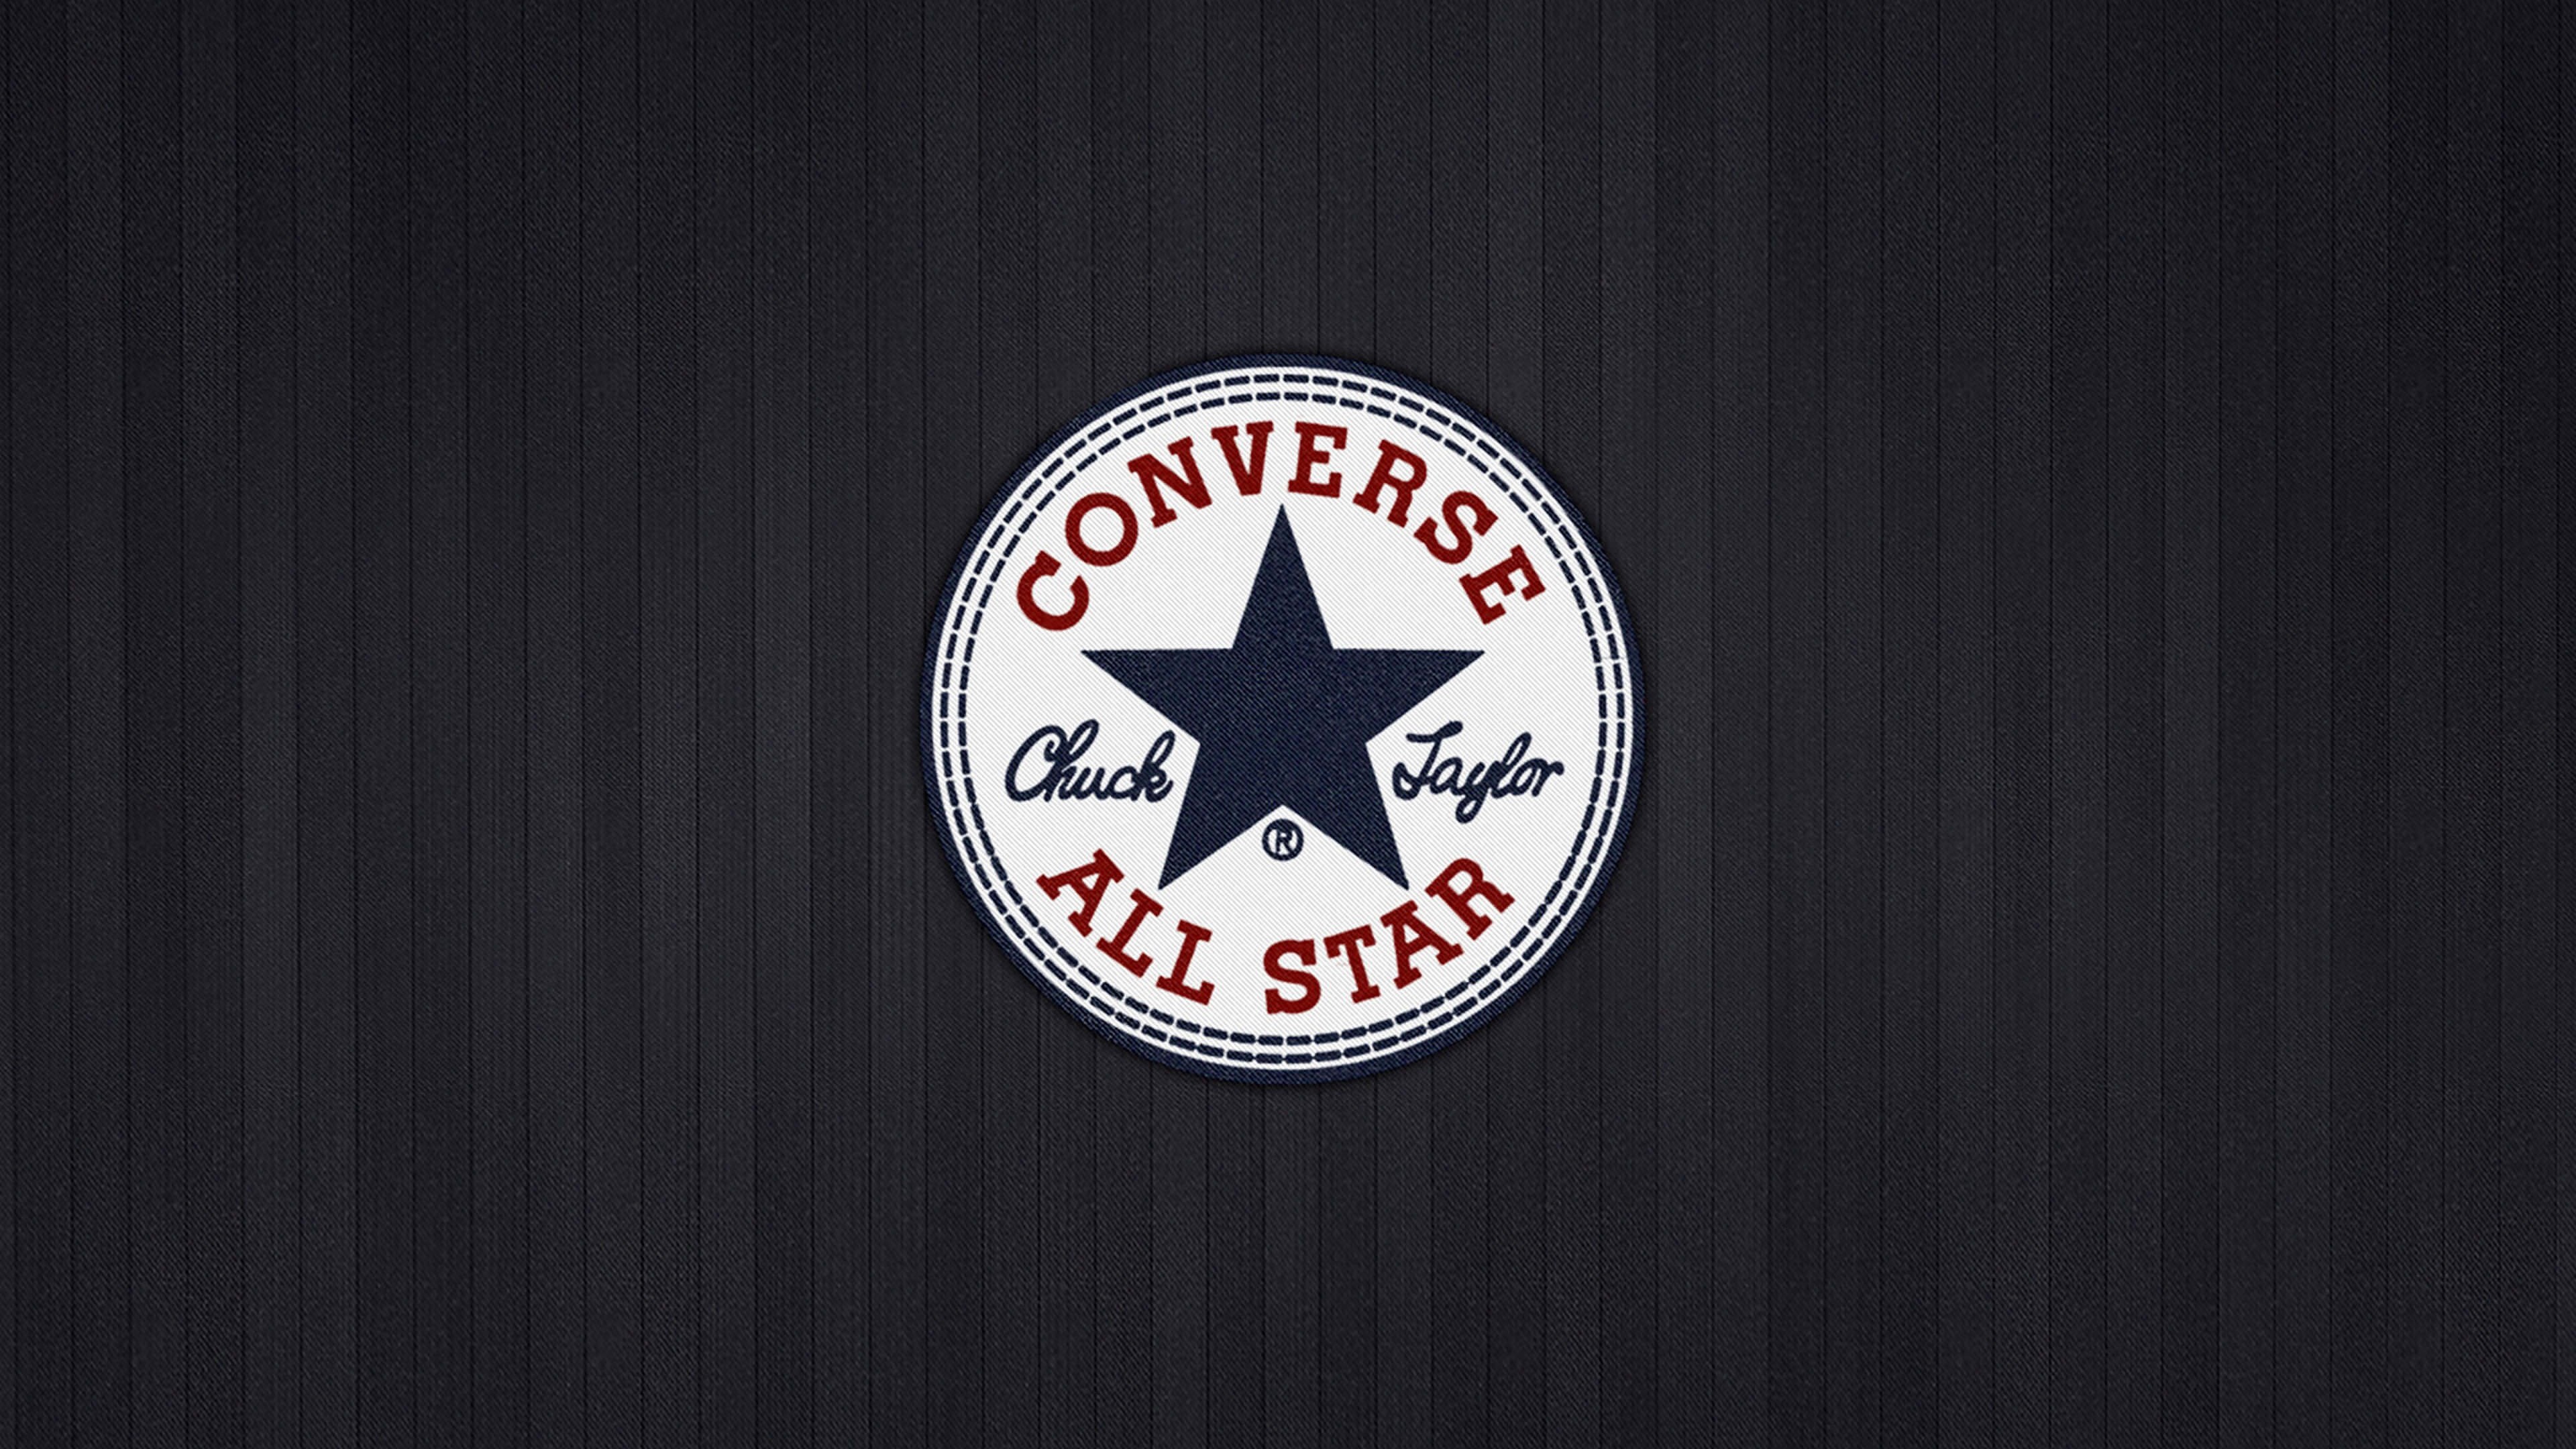 Converse All Star Wallpaper for Desktop 4K 3840x2160